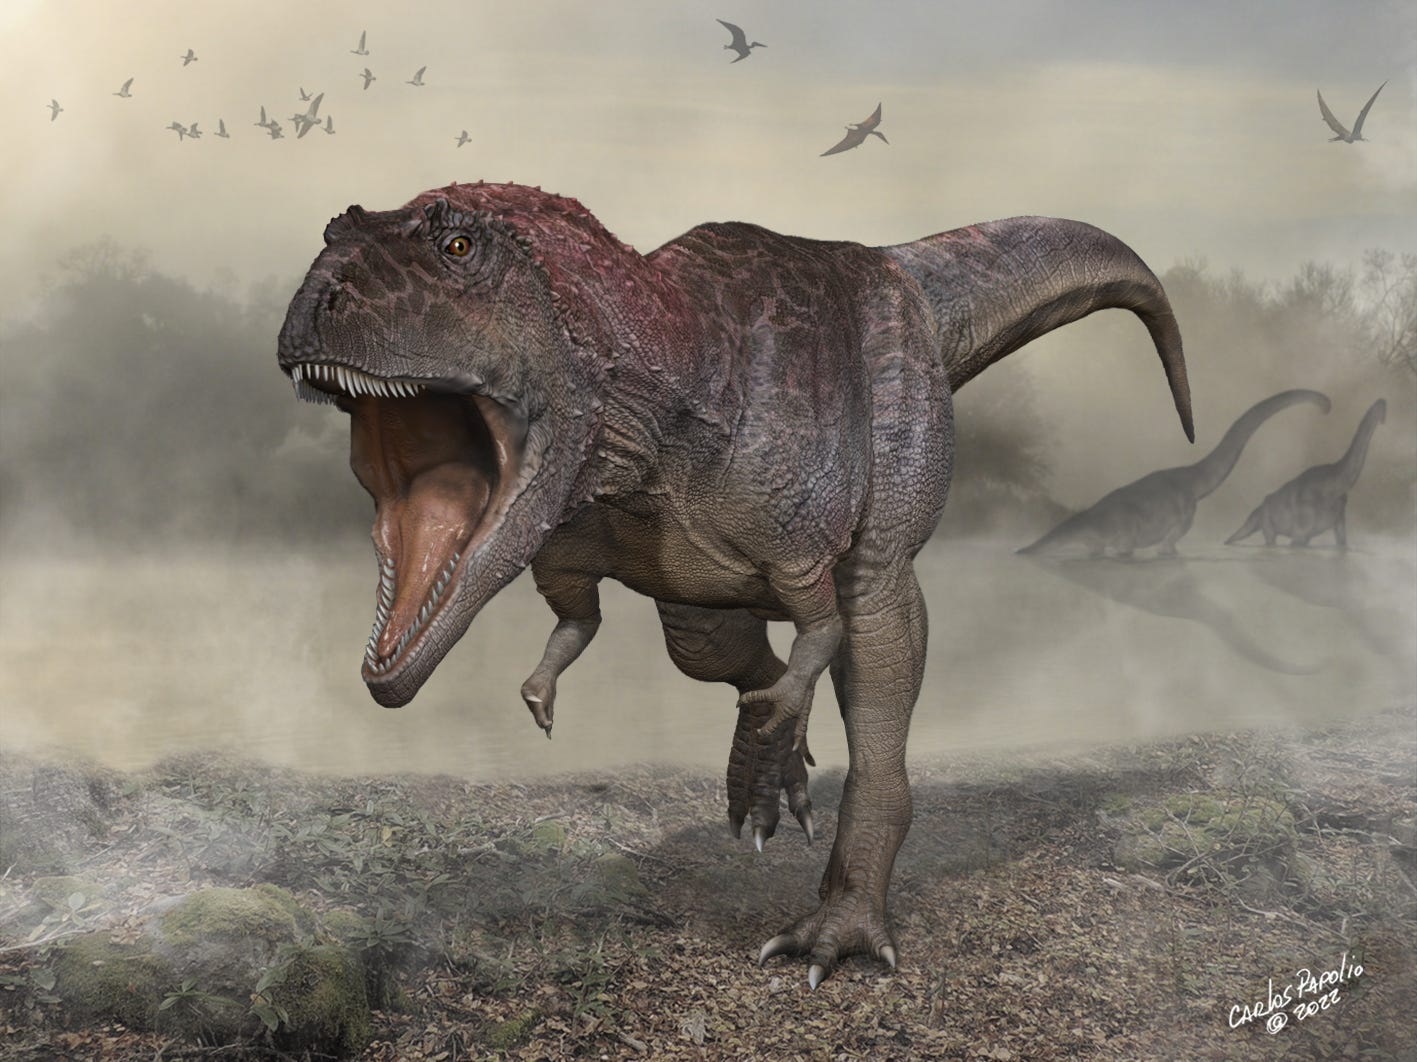 Bilim adamları, T. rex gibi küçük kolları olan devasa bir dinozor buldular ve bu, neden bu şekilde evrimleştiklerinin gizemini derinleştirdi